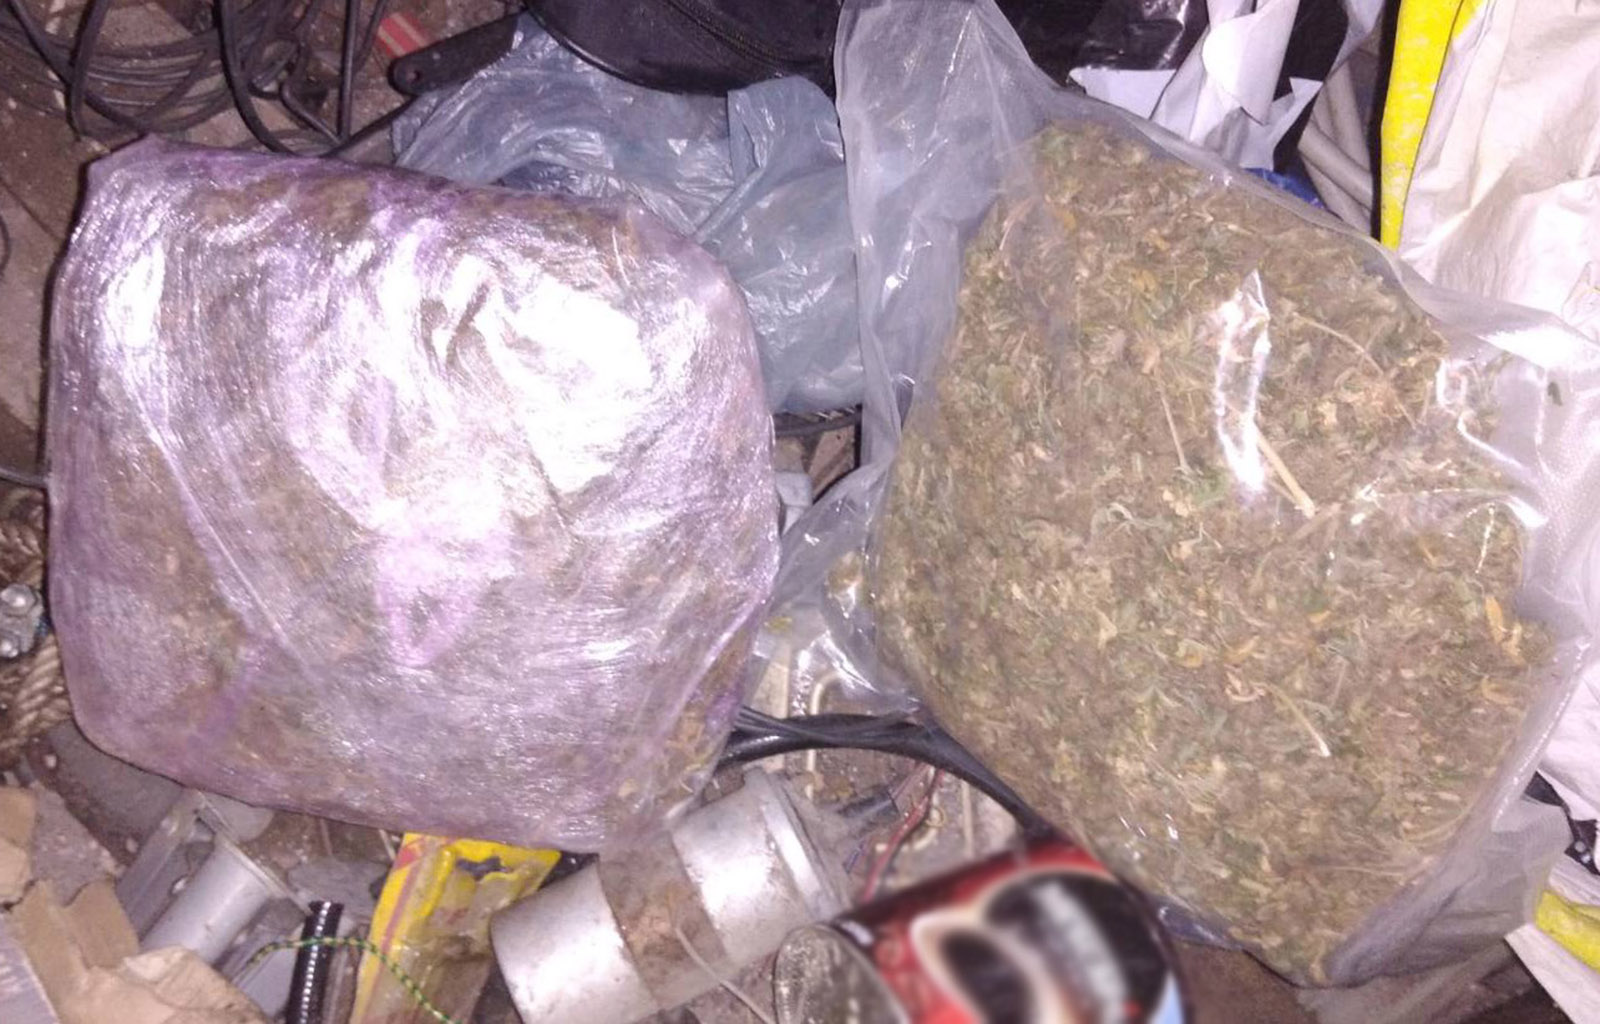 Полиција запленила око 1,8 килограма марихуане, више од 1,5 килограма амфетамина и ухапсила пет особа